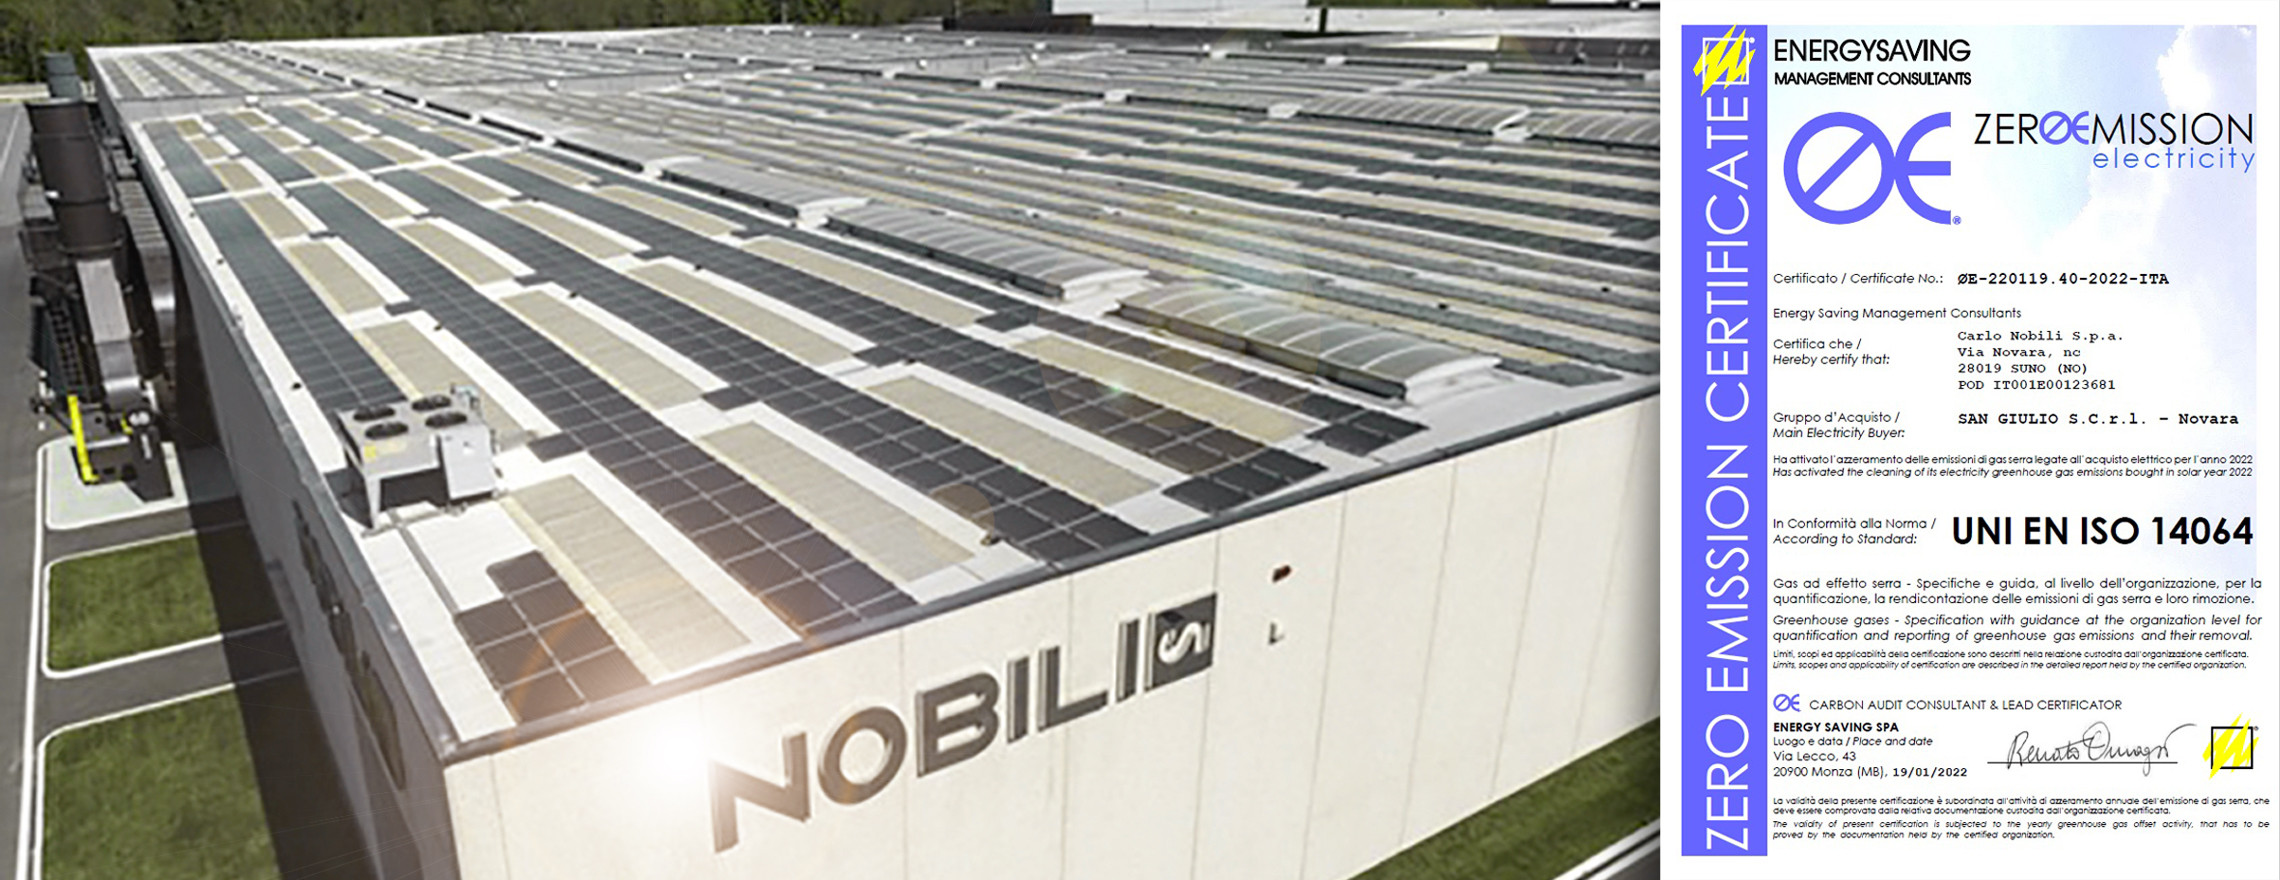 Nobili Zero Emission Company